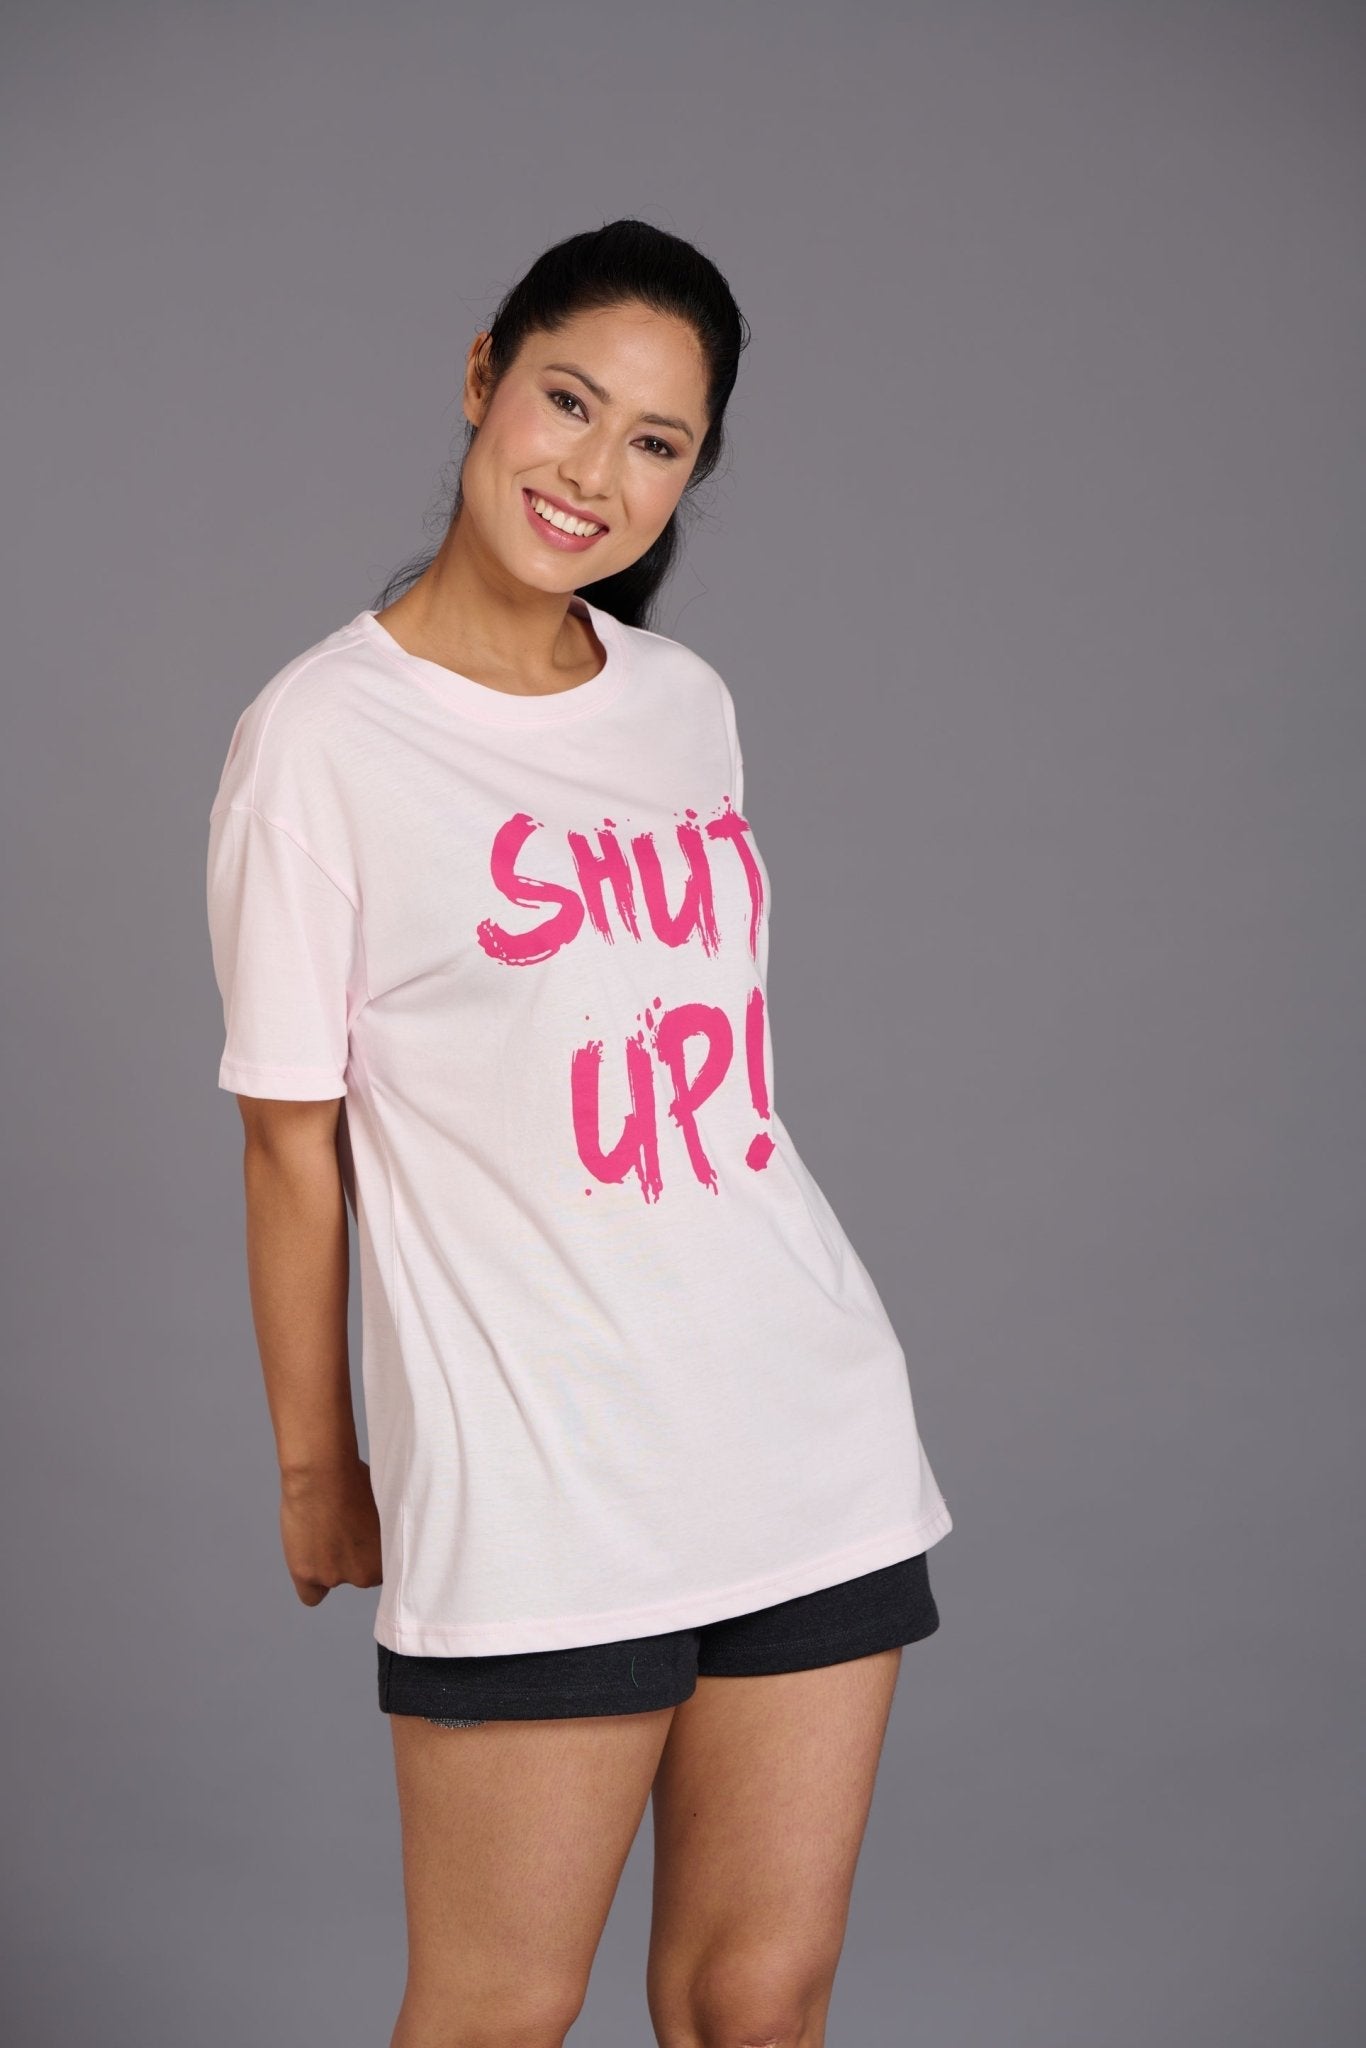 Shut Up Printed Pink Oversized T-Shirt for Women - Go Devil